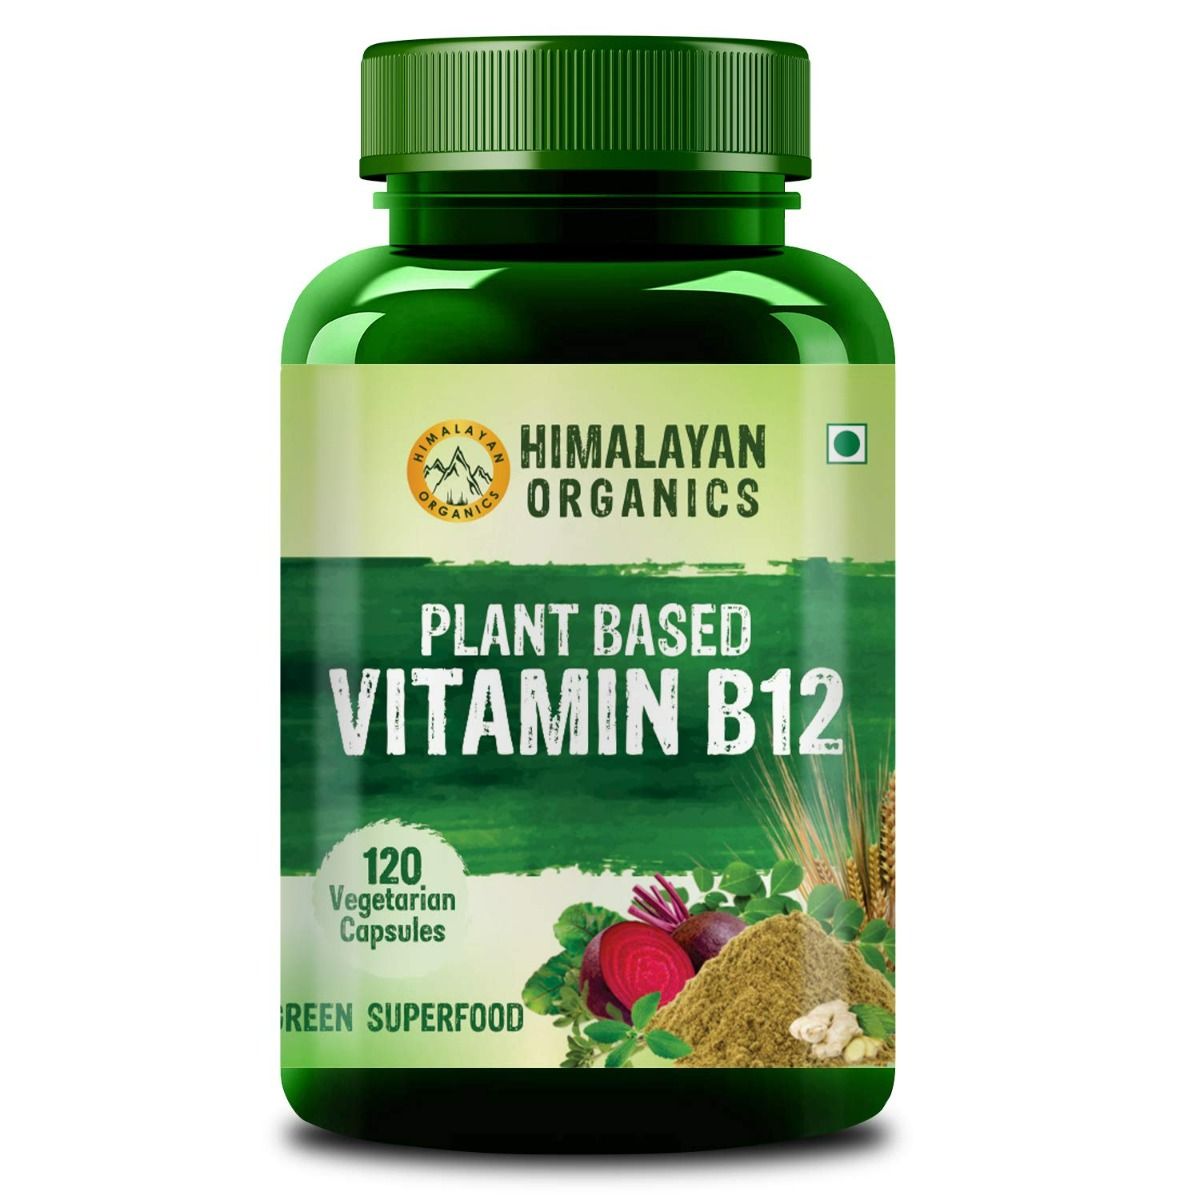 Buy Himalayan Organics Plant Based Vitamin B12, 120 Capsules Online